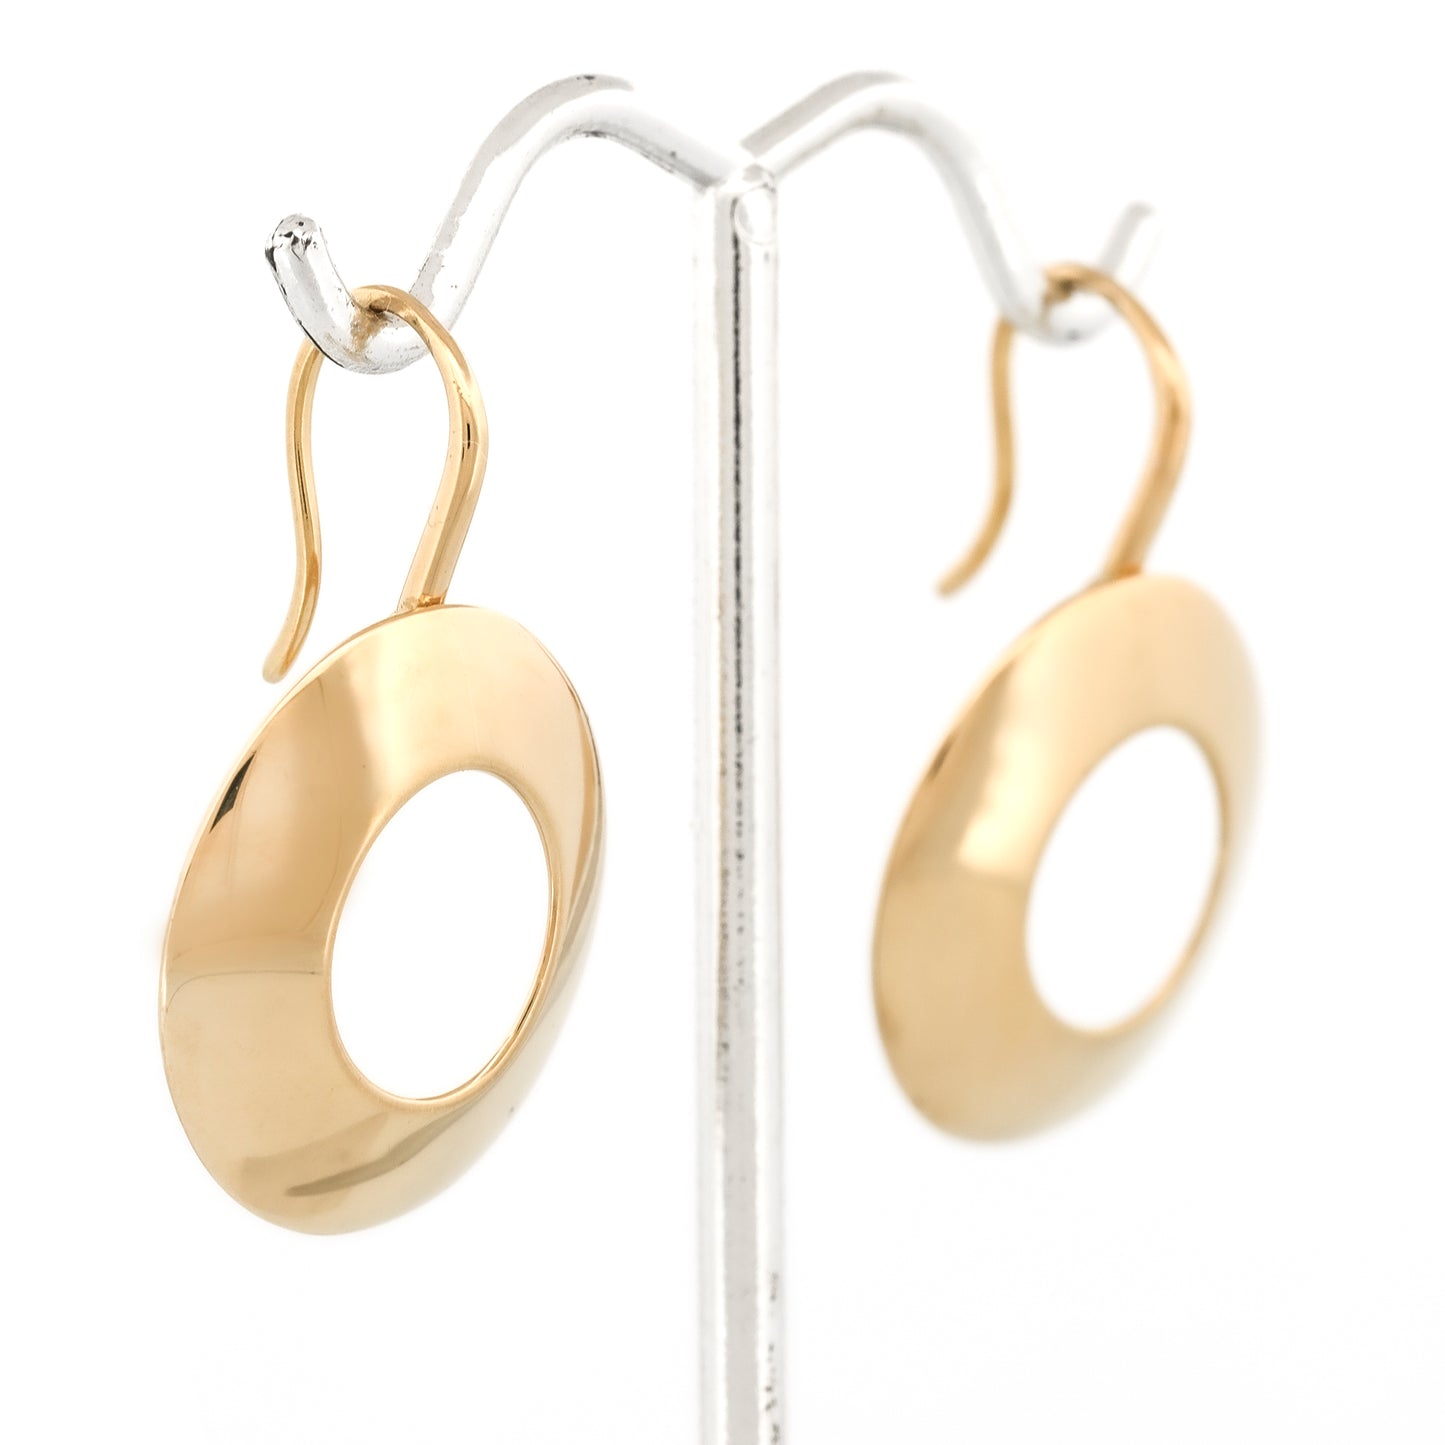 Tiffany & Co. Frank Gehry Morph Dangle Hook Earrings in 18k Yellow Gold